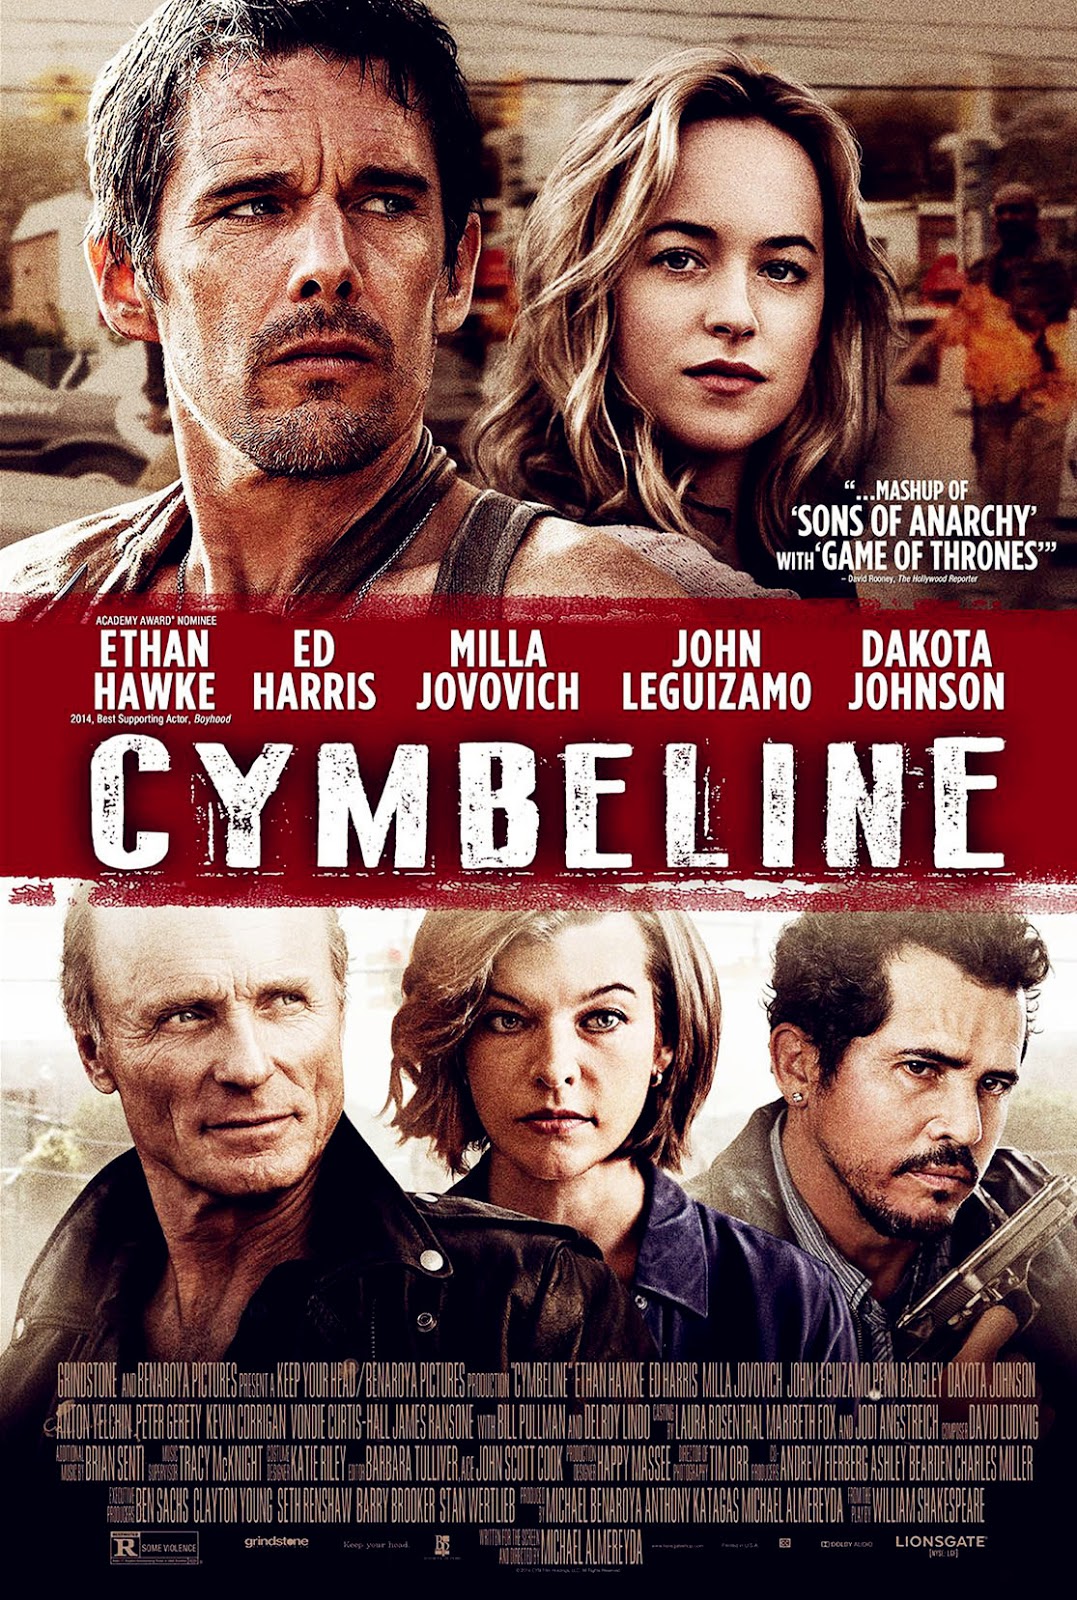 Cymbeline Movie Film 2015 - Sinopsis (Ethan Hawke, Ed 